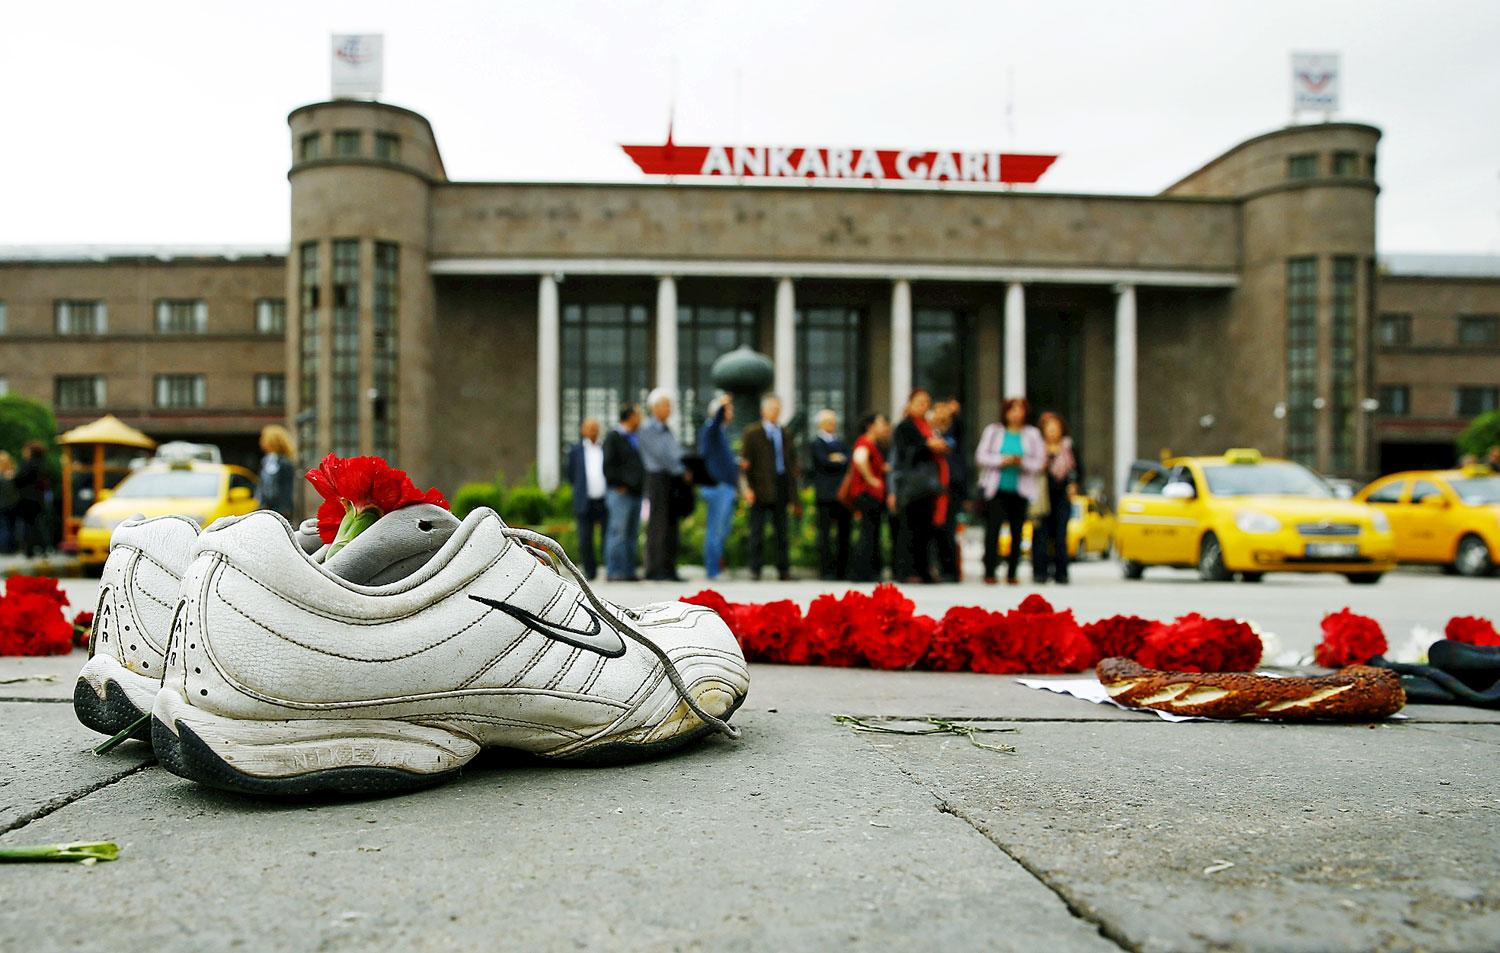 Ankarai mementó. A szombati kettős terrortámadásban meggyilkolt egyik áldozat cipői a pályaudvarnál